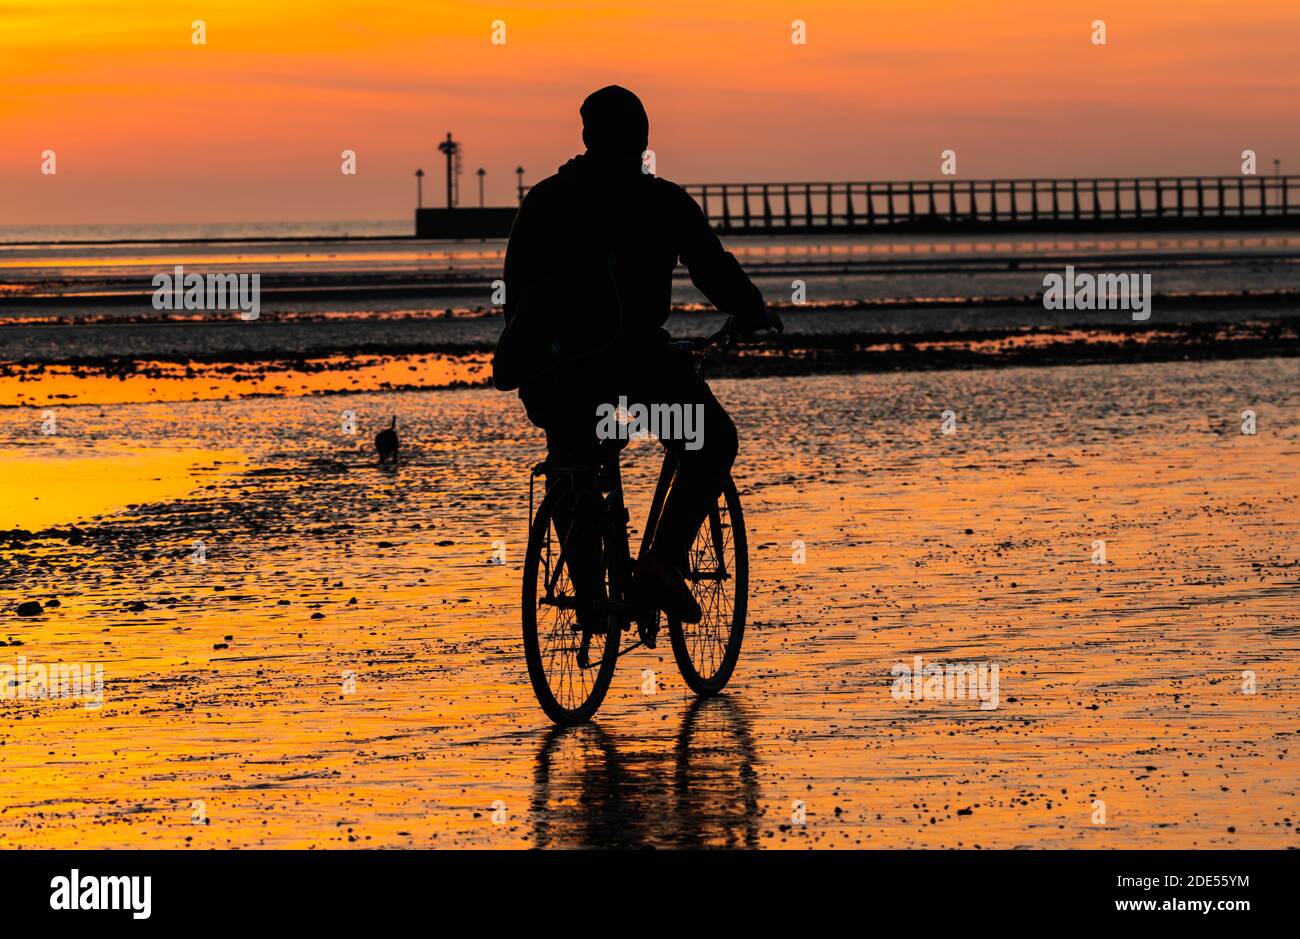 Un cycliste prend un vélo sur la plage pendant une soirée d'hiver tandis que le soleil se couche à marée basse à Littlehampton, West Sussex, Angleterre, Royaume-Uni. Banque D'Images